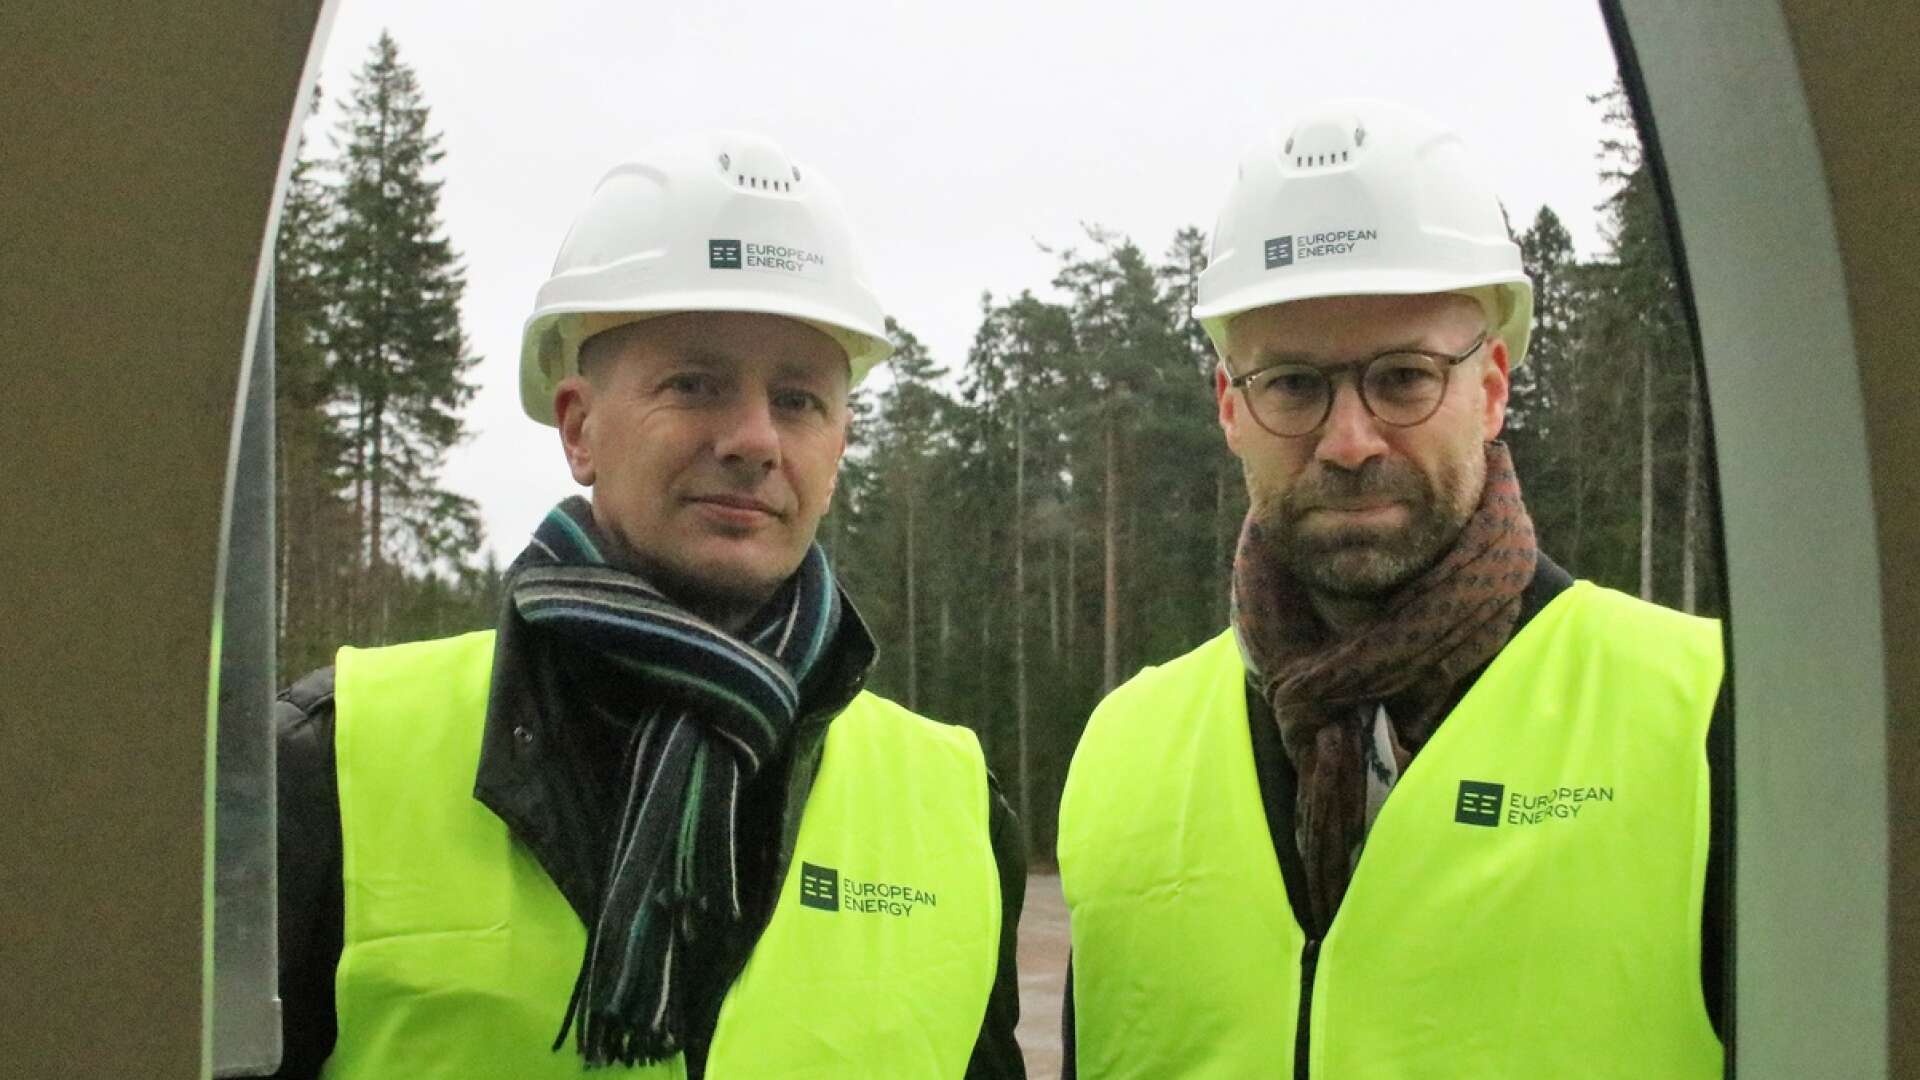 Peter Braun, European Energys projektchef i Sverige, Norge och Finland, och Ted Bergdahl, kommunikationschef på det danska företaget European Energy, hoppas att Ånimskog ska få en hybridpark där den nyinvigda vindkraftsparken kompletteras med en solpark.